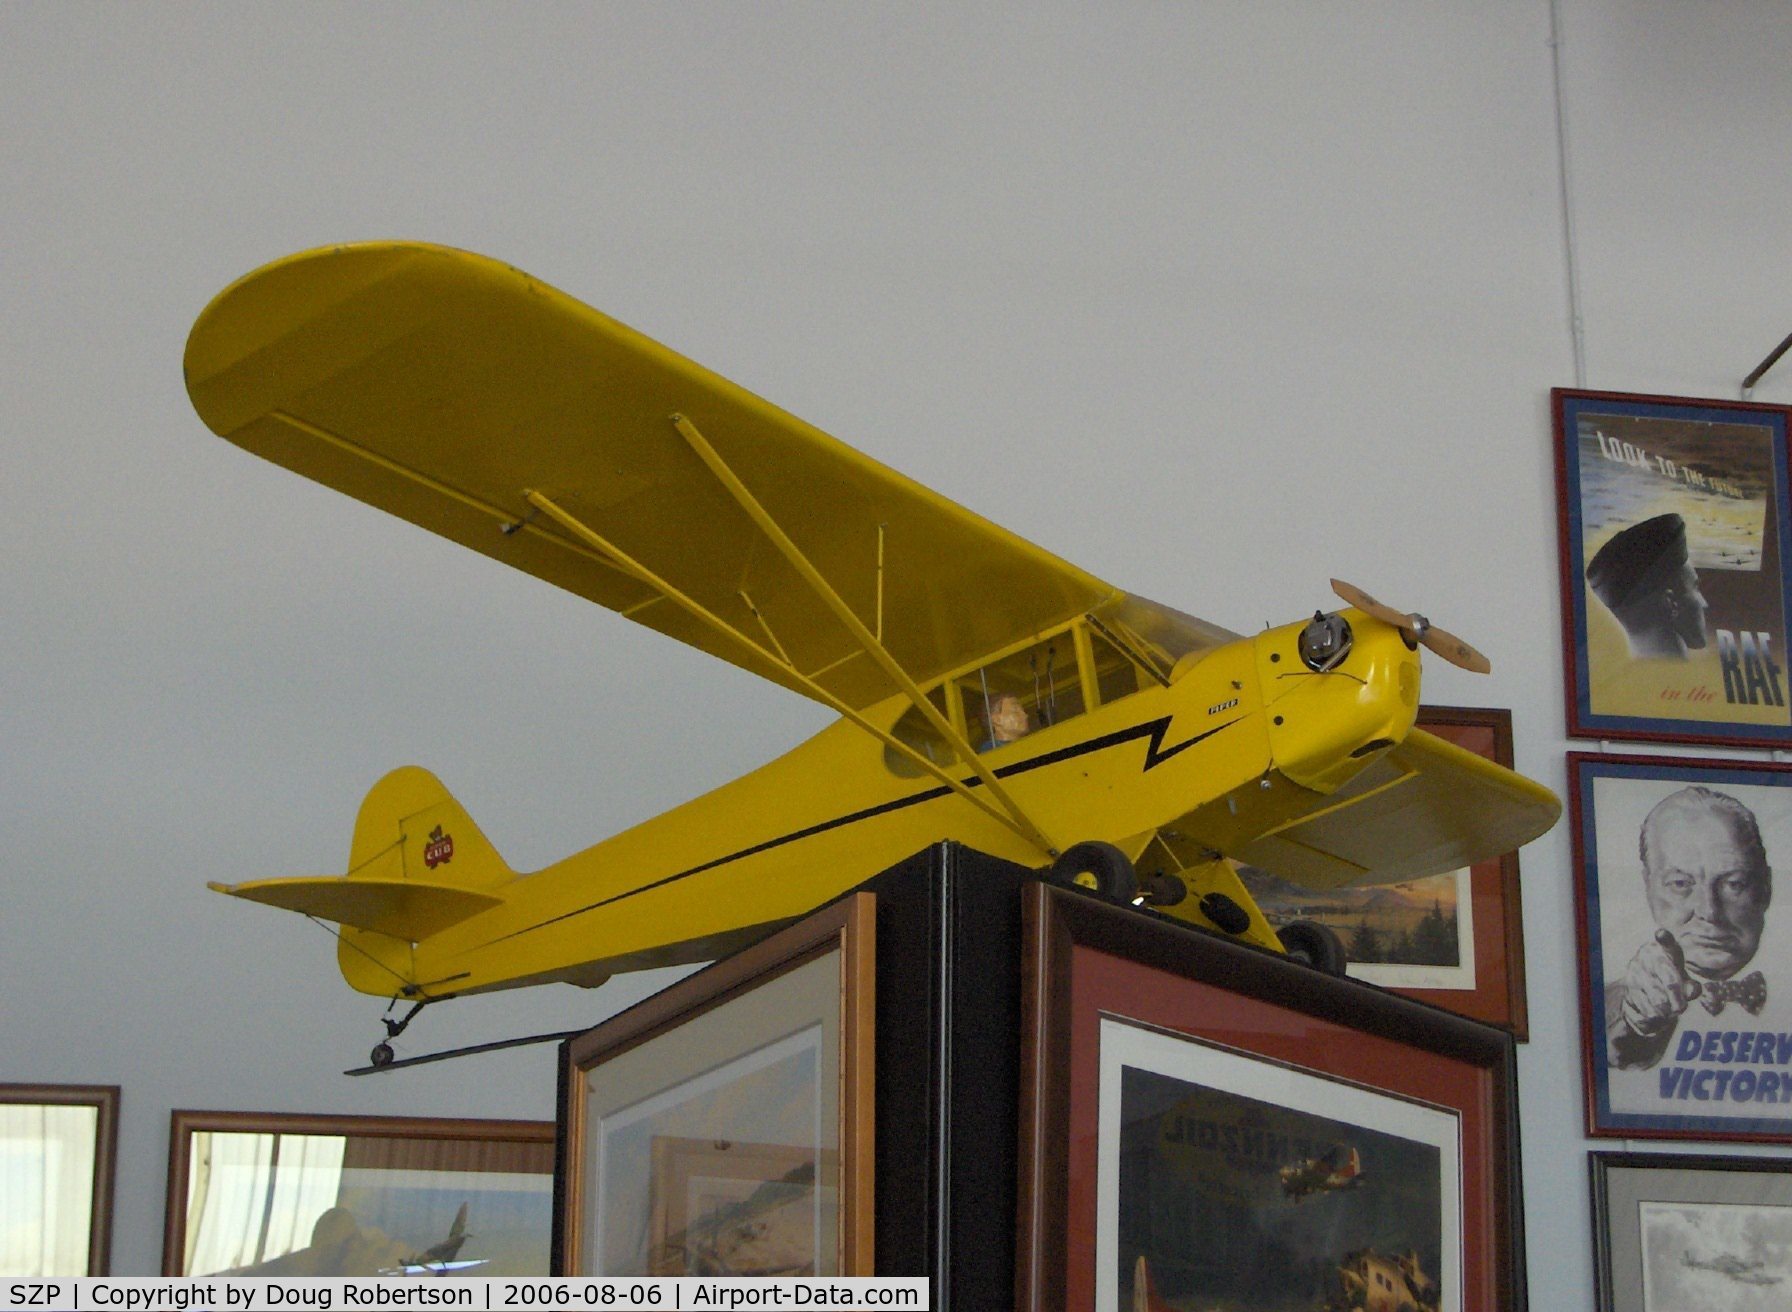 Santa Paula Airport (SZP) - RC scale model of NC5793N 1944 Piper J3C-65 CUB